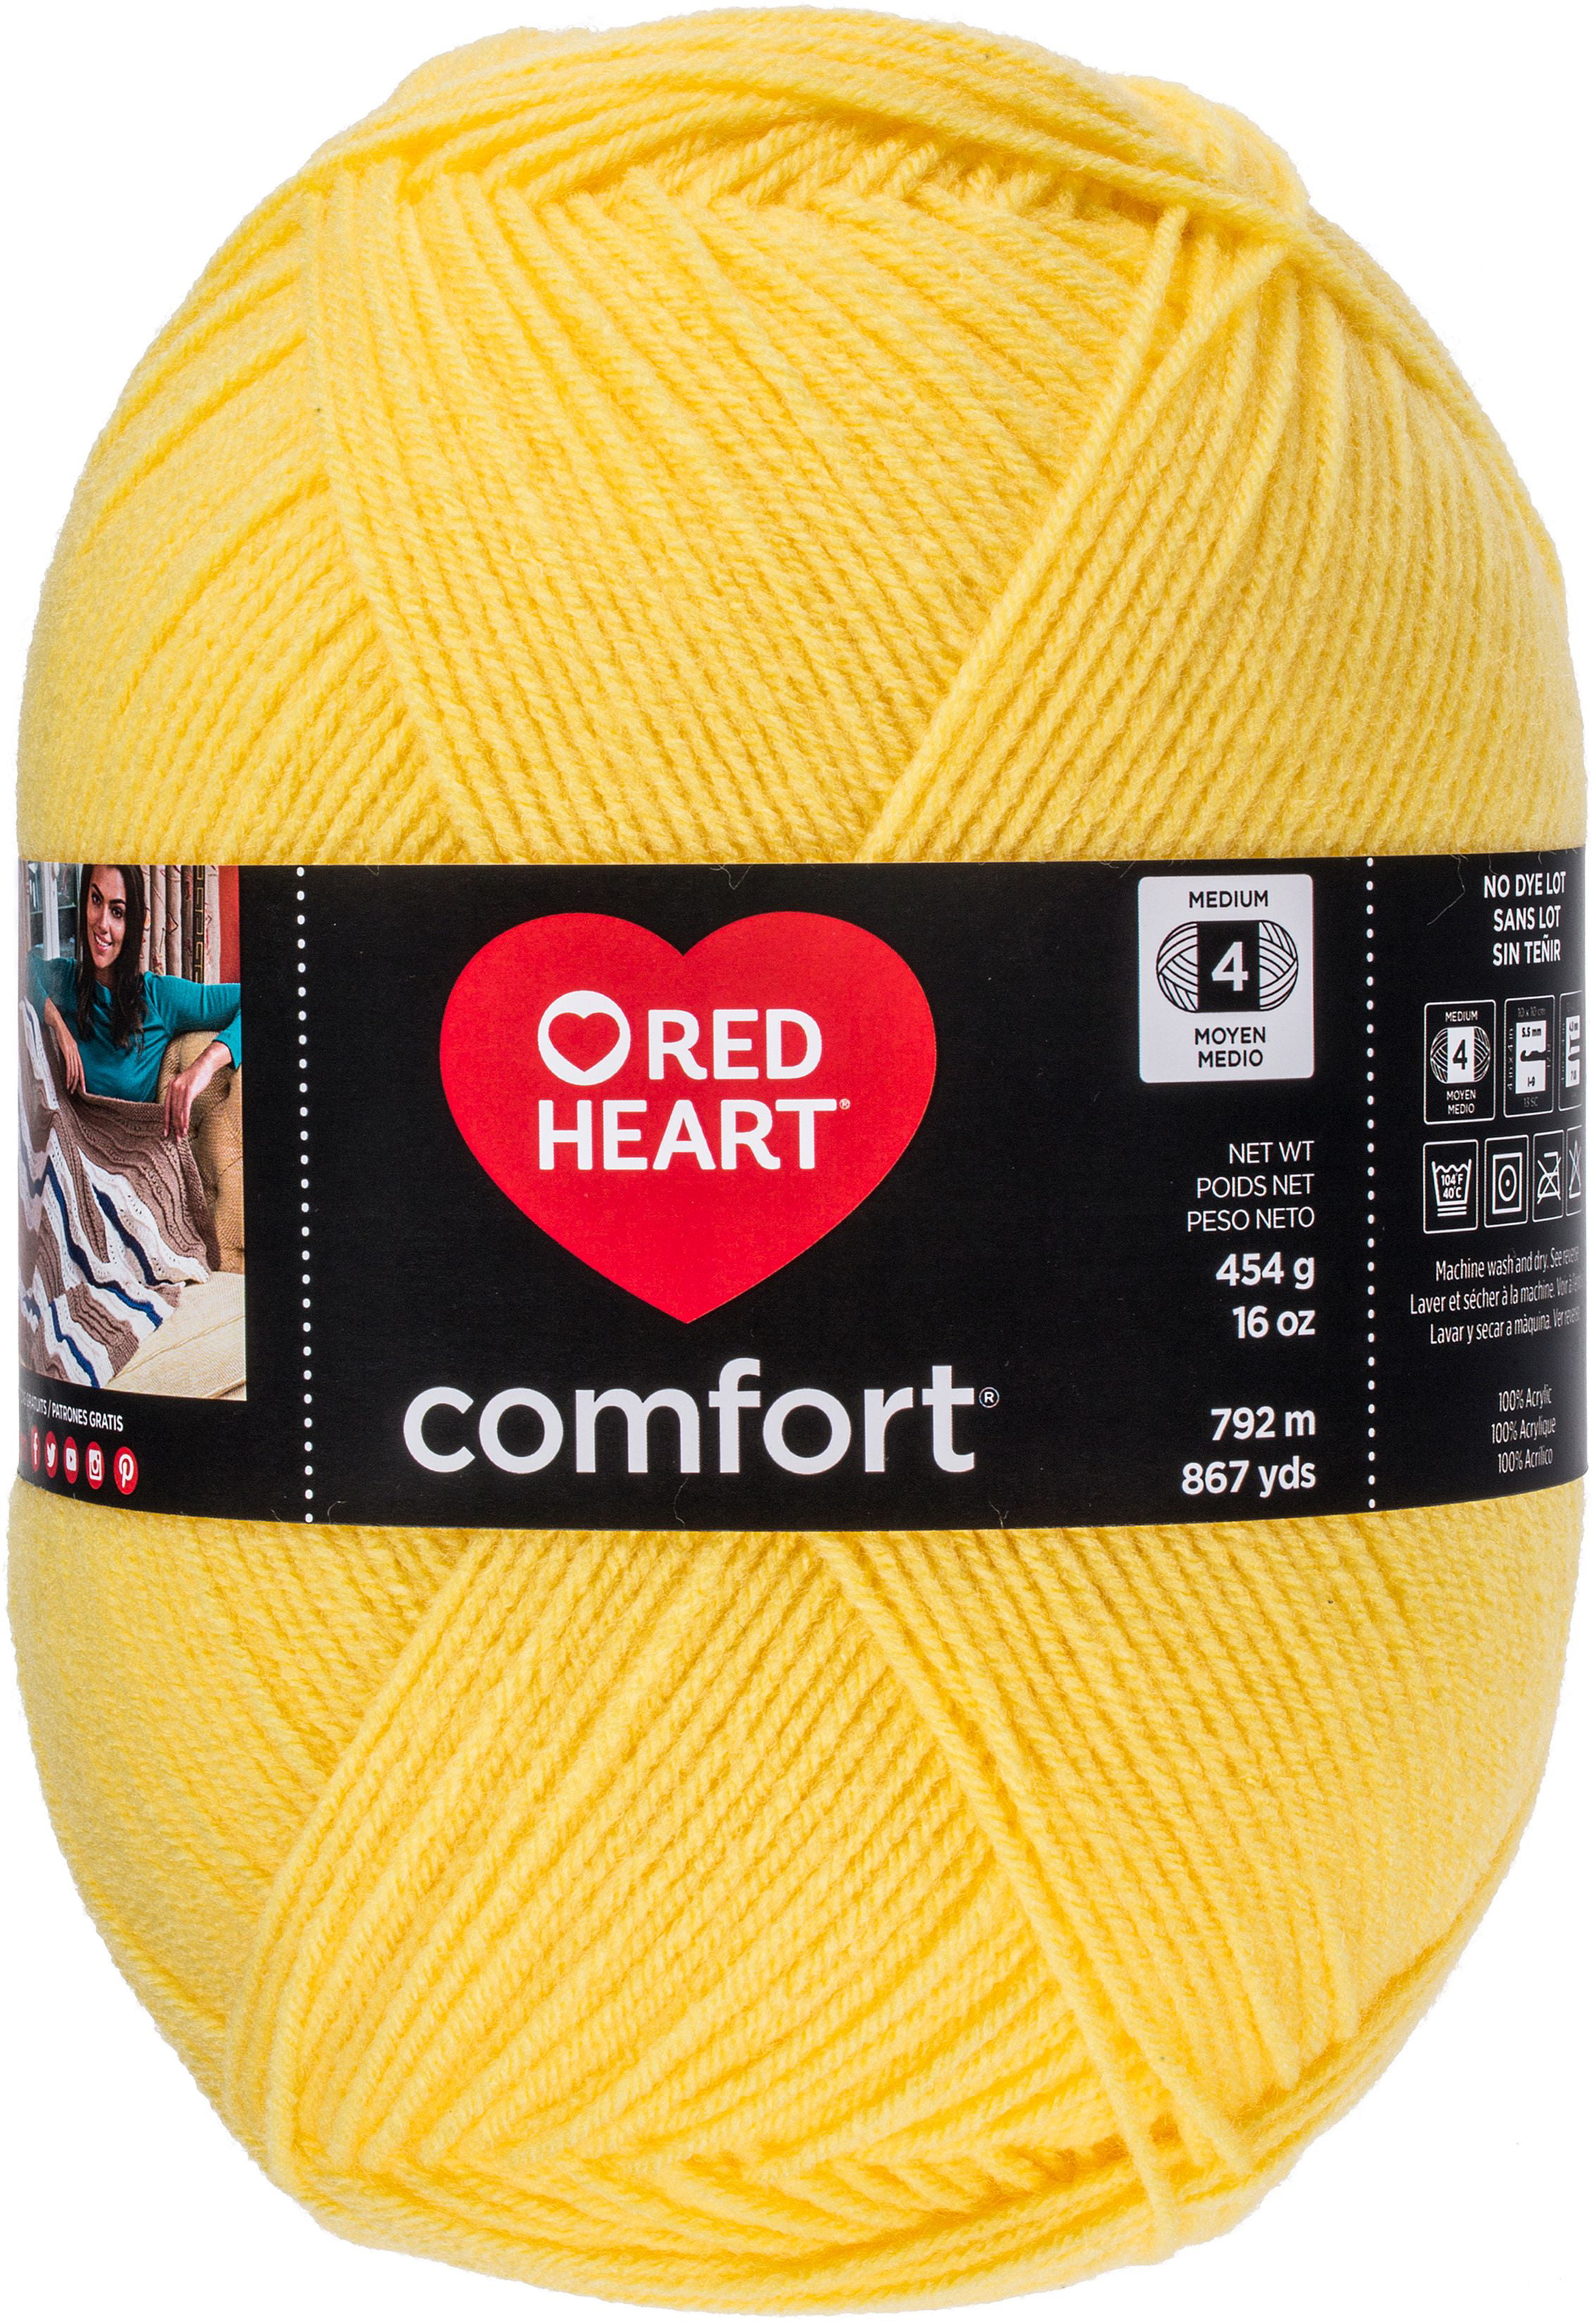 Red Heart Comfort - Walmart.com